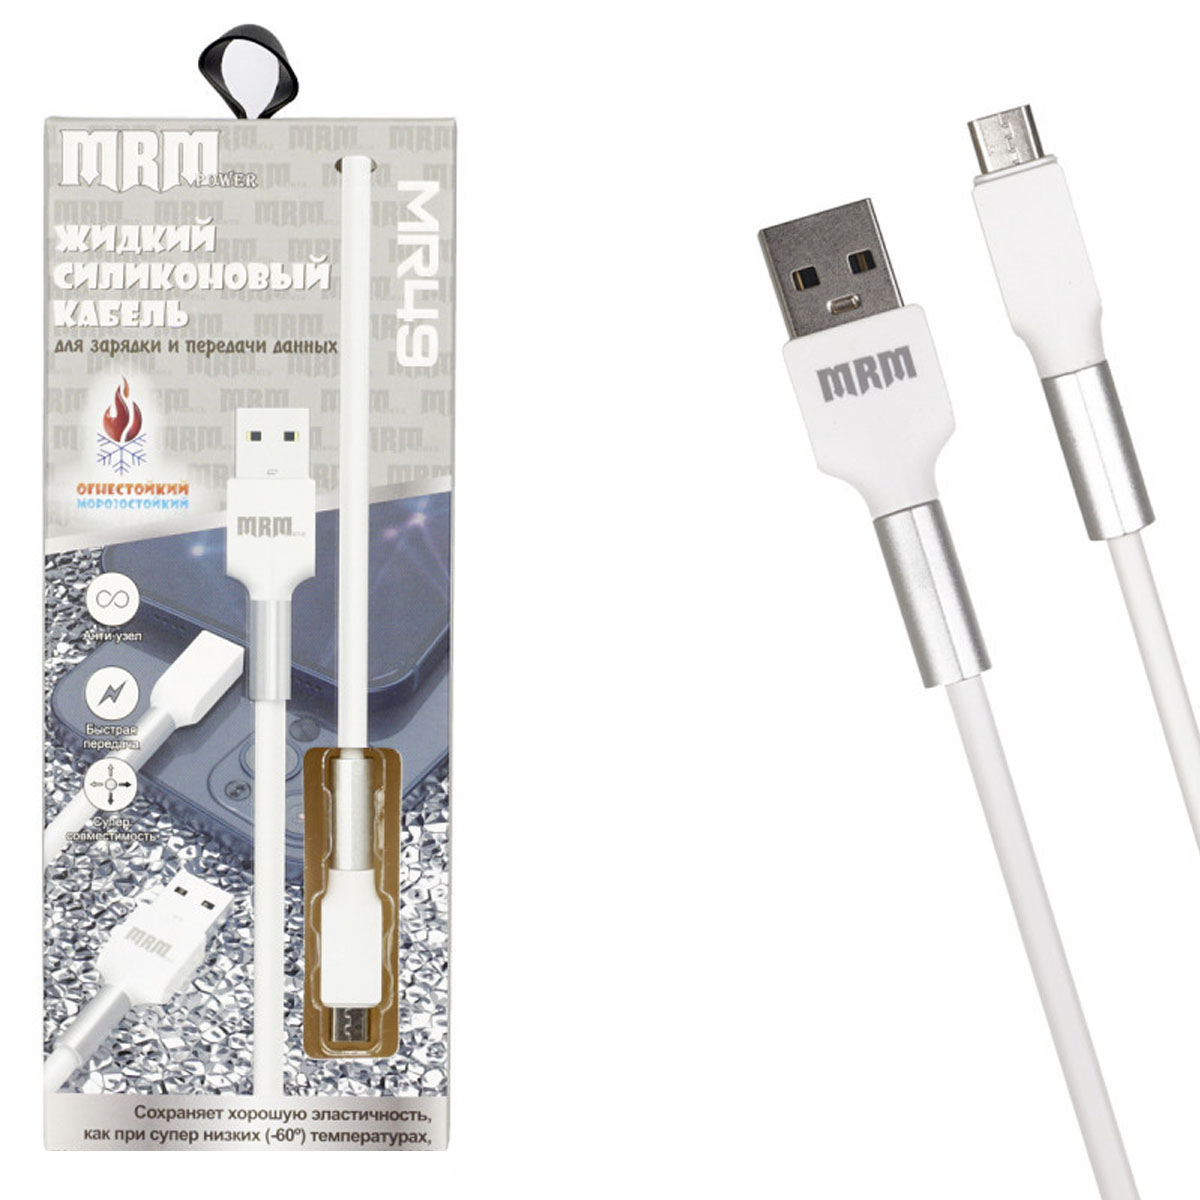 Кабель MRM MR49m Micro USB, 5А, длина 1 метр, силикон, цвет белый